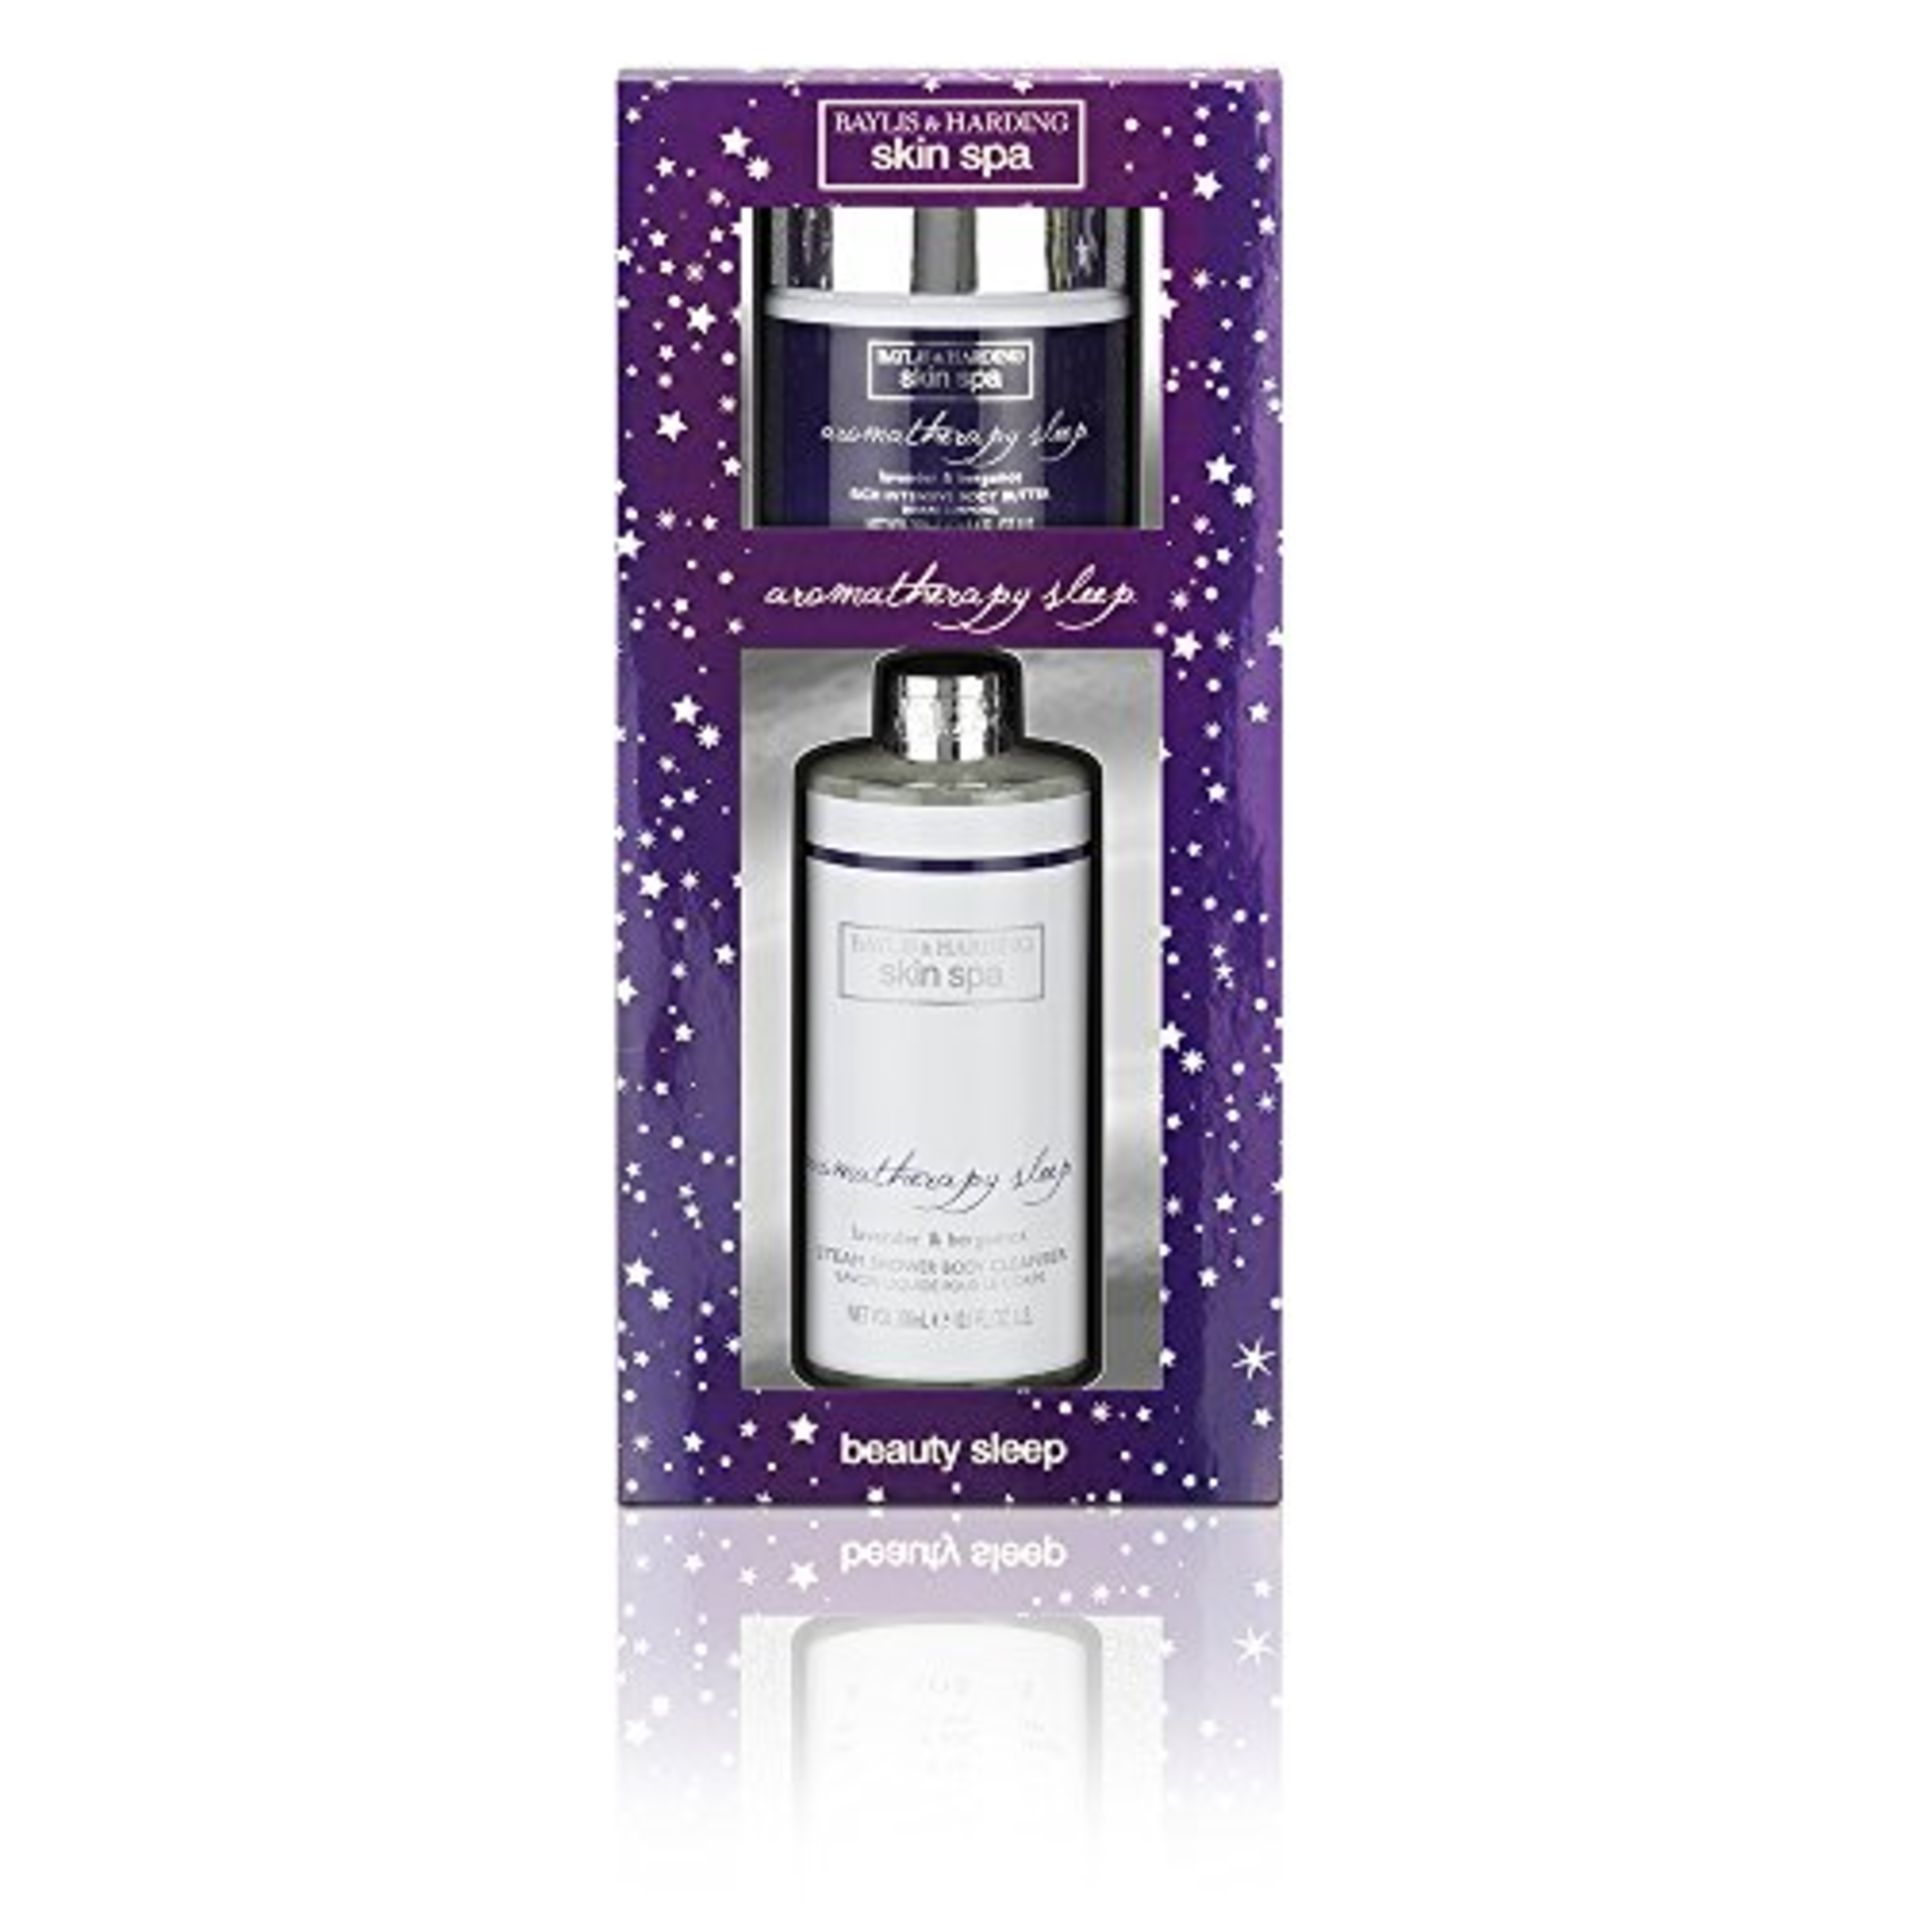 V Brand New Baylis & Harding Skin Spa Aromatherapy Sleep Gift Set ISP £10